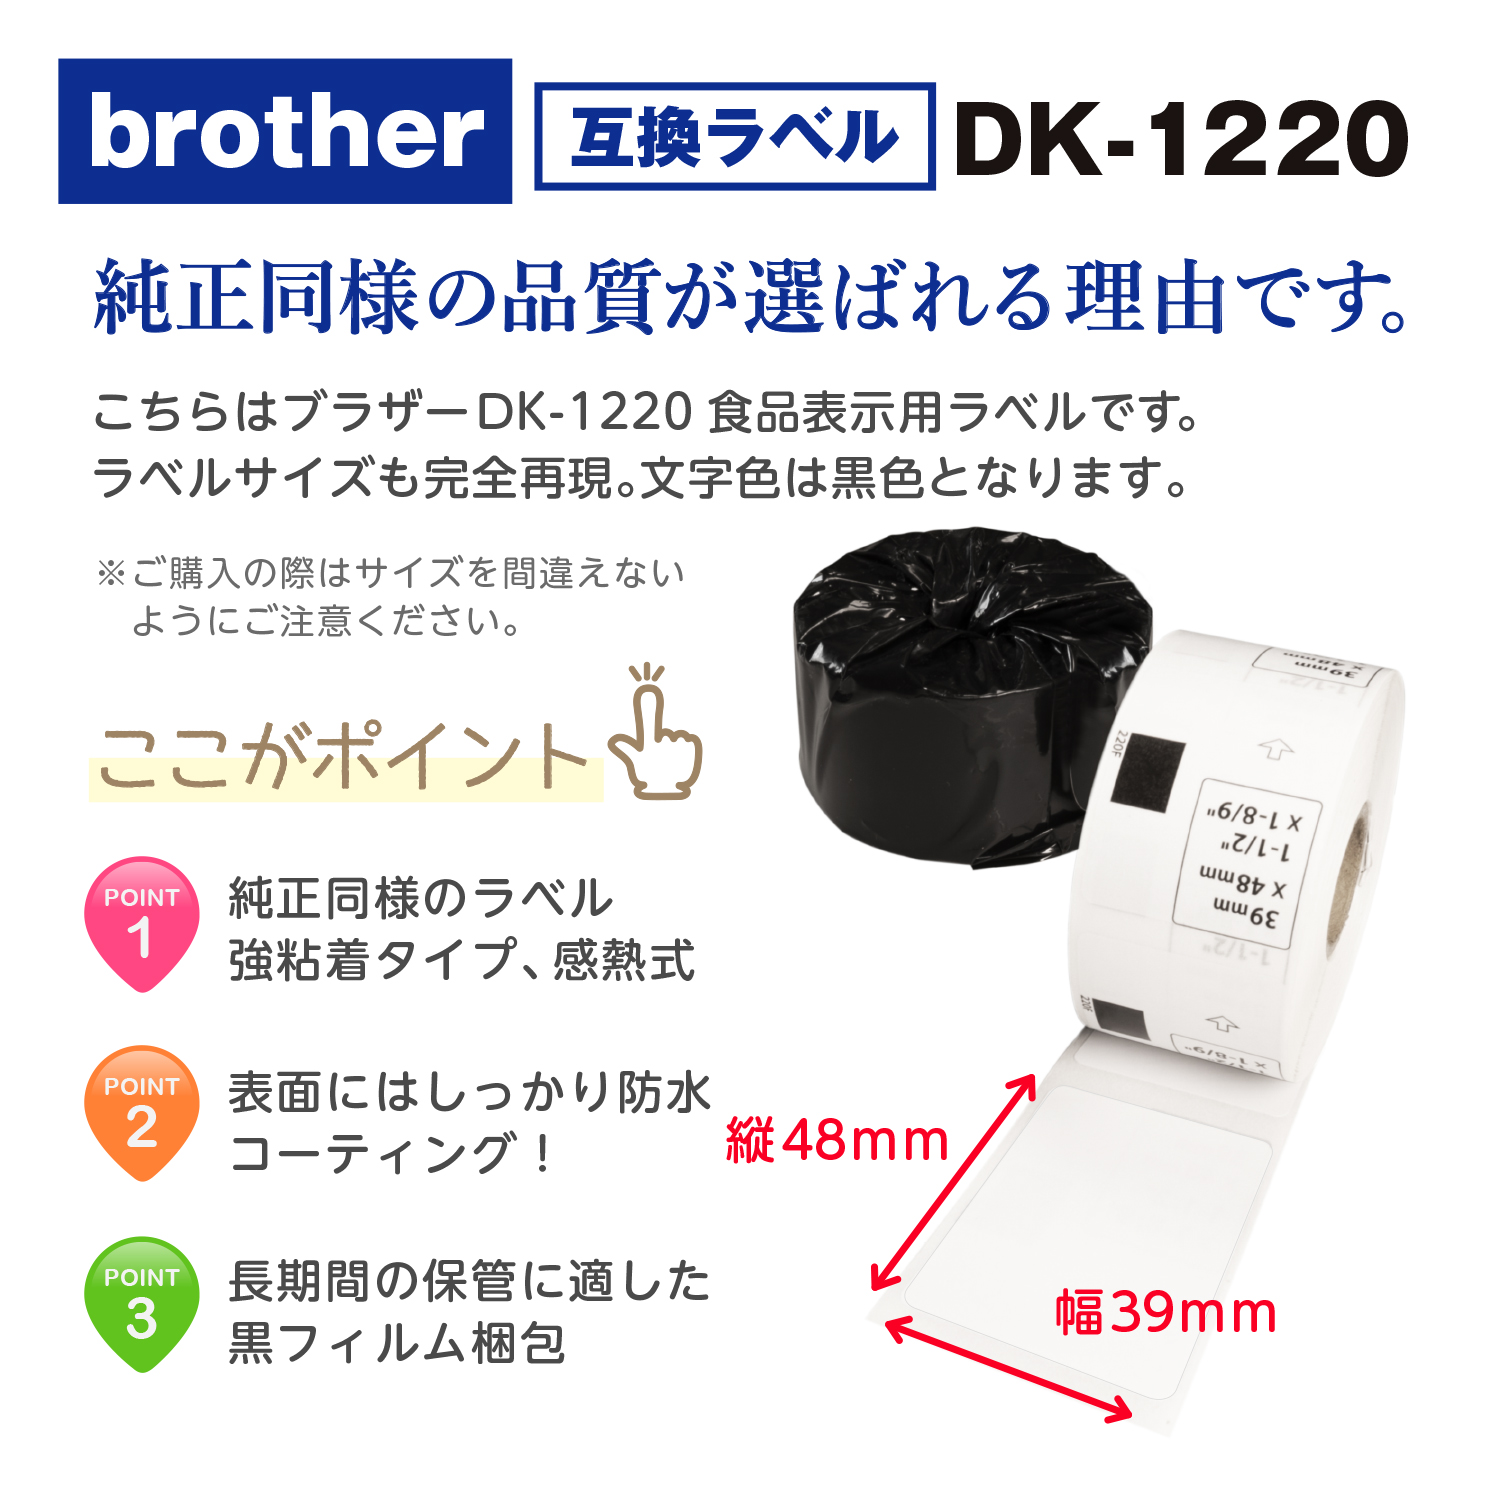 新作商品 DK-1201 ブラザー 互換 ラベル 50ロールセット brother QL-700 QL-800 等に 50ロール 